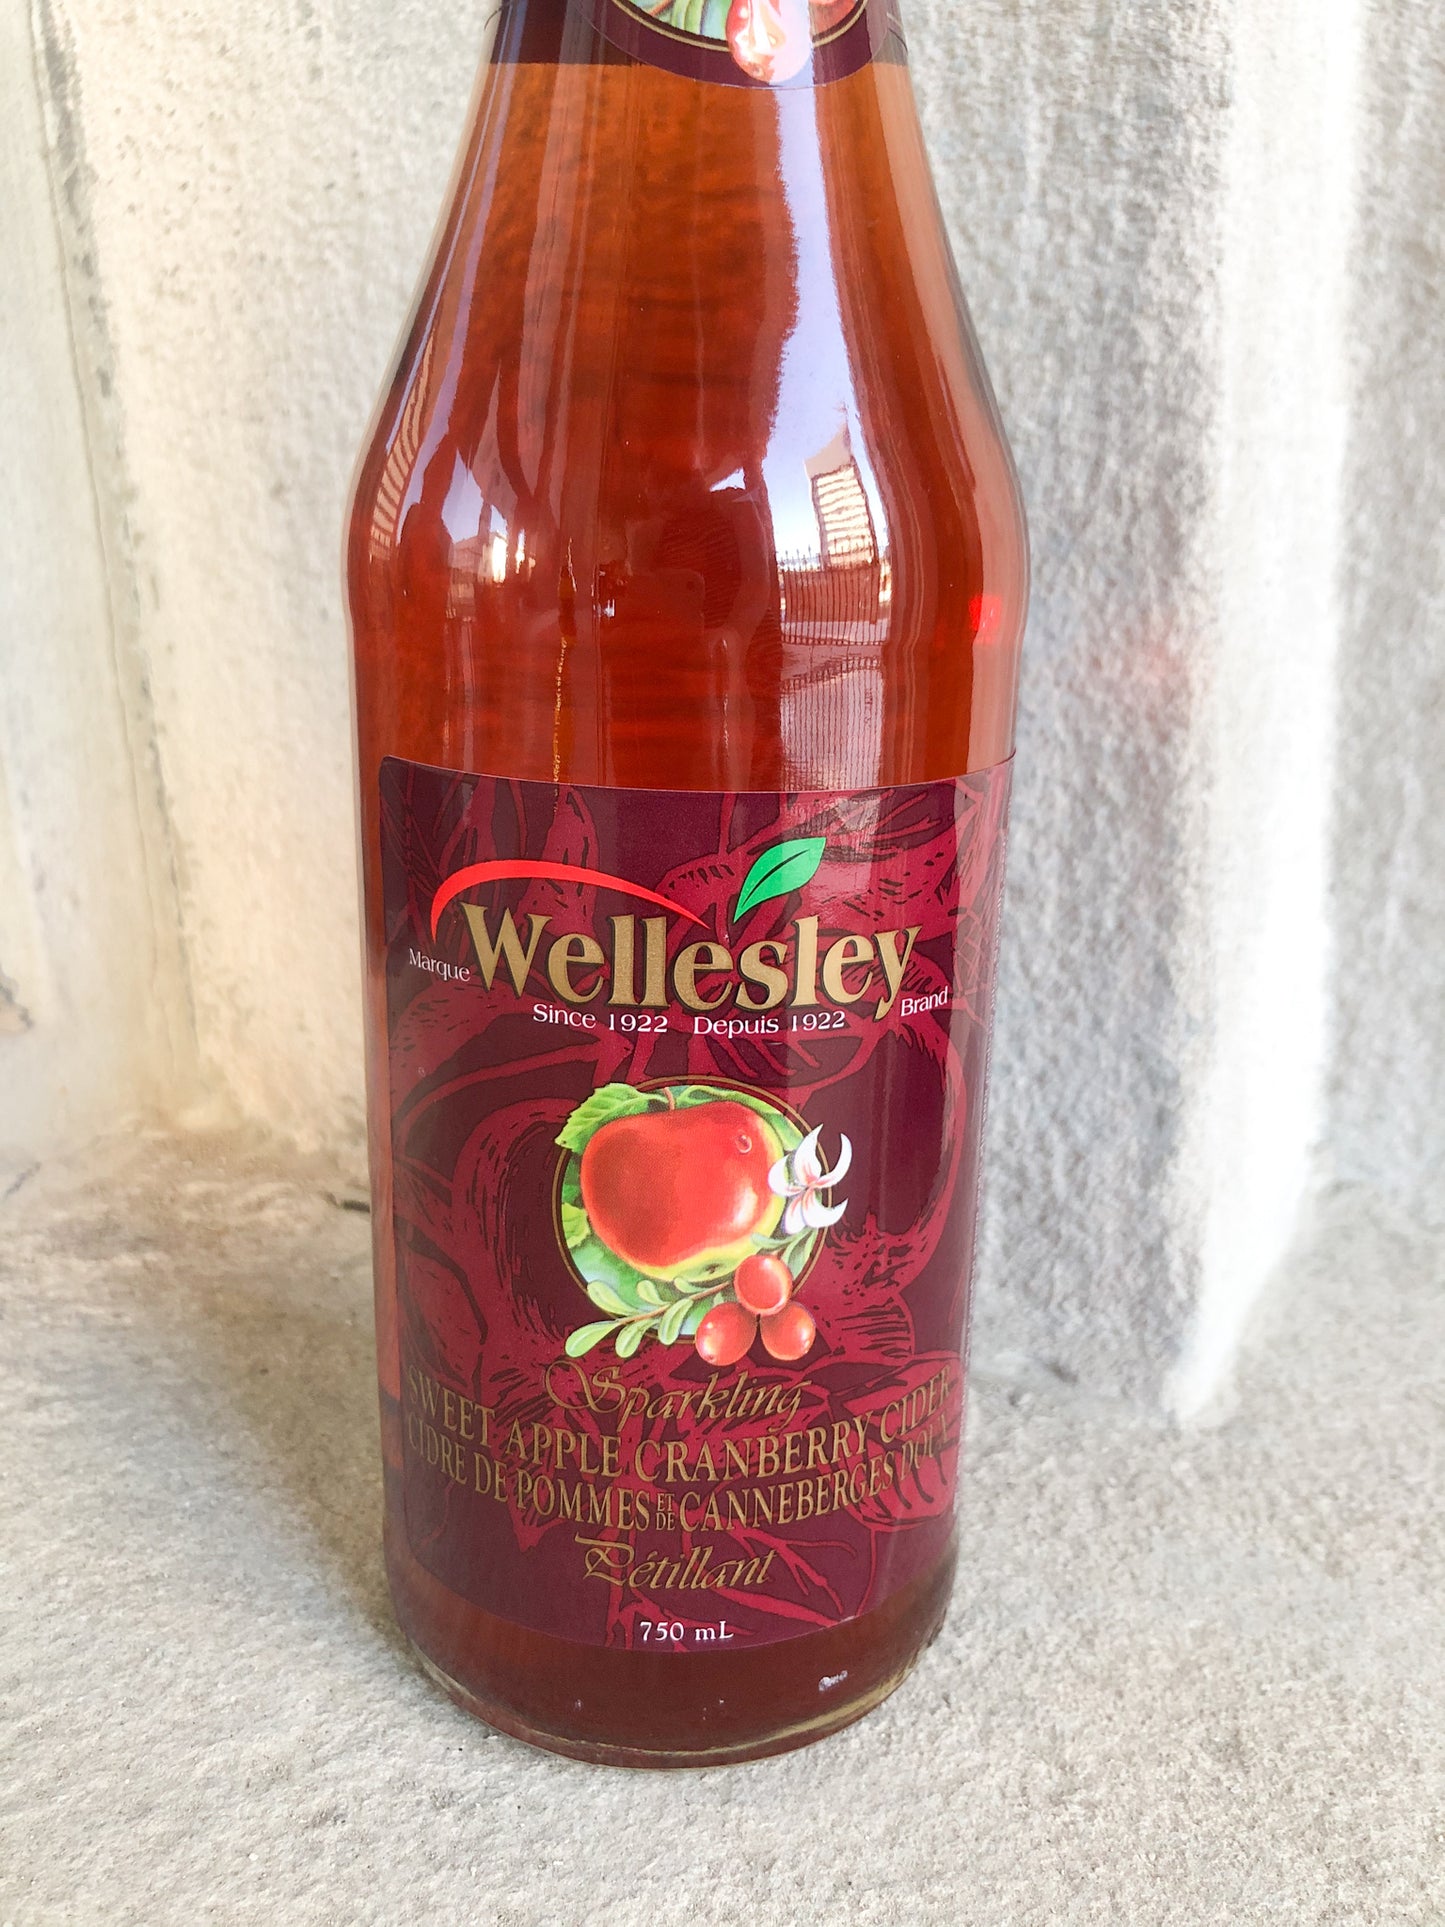 Wellesley Sparkling Sweet Apple Cranberry Cider 750ml - Preservative Free & No Added Sugar